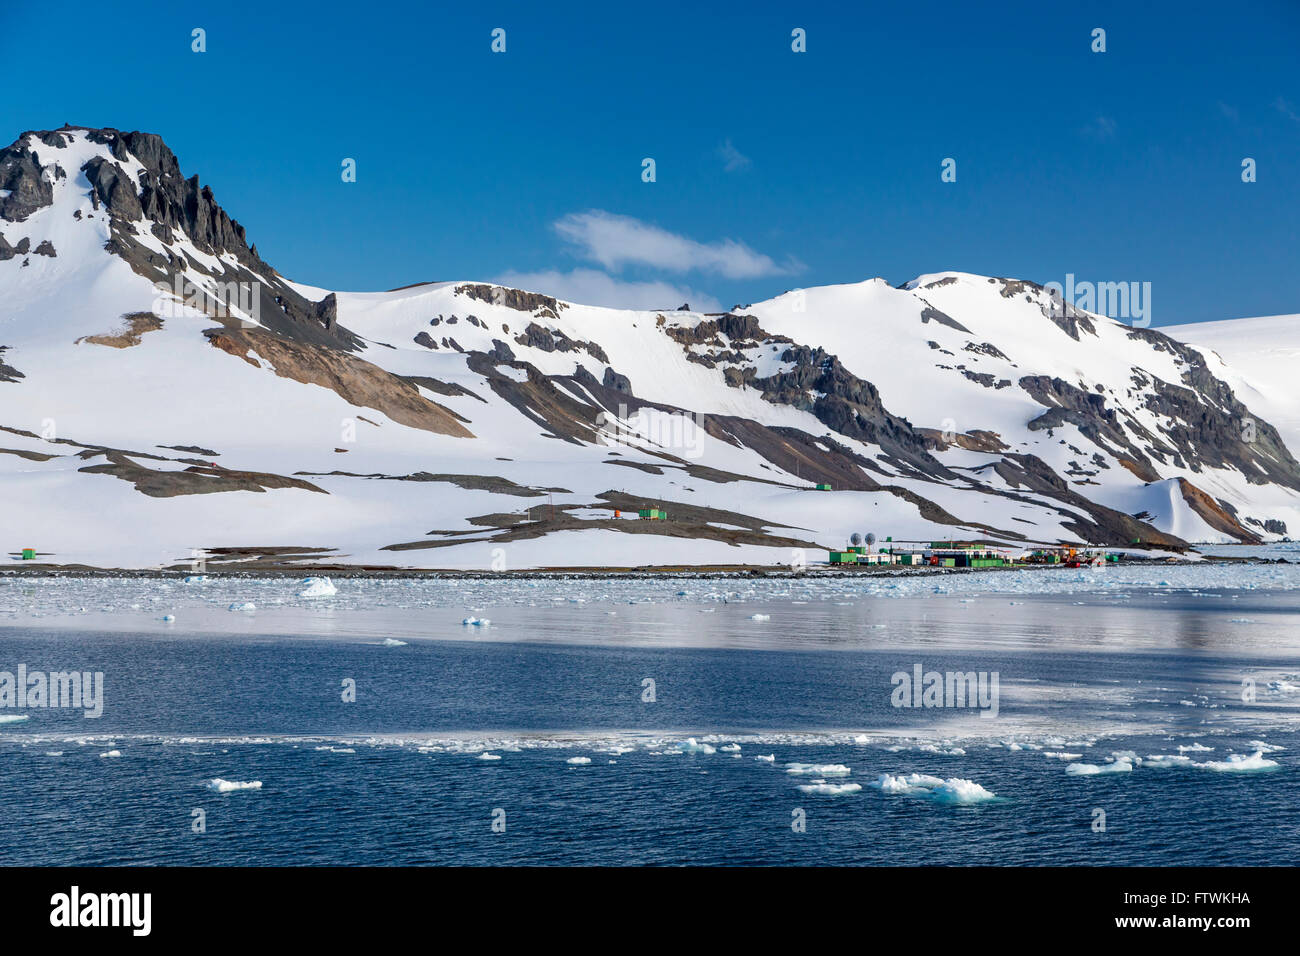 La Station de recherche brésilien, dans la péninsule Antarctique, l'Antarctique. Banque D'Images